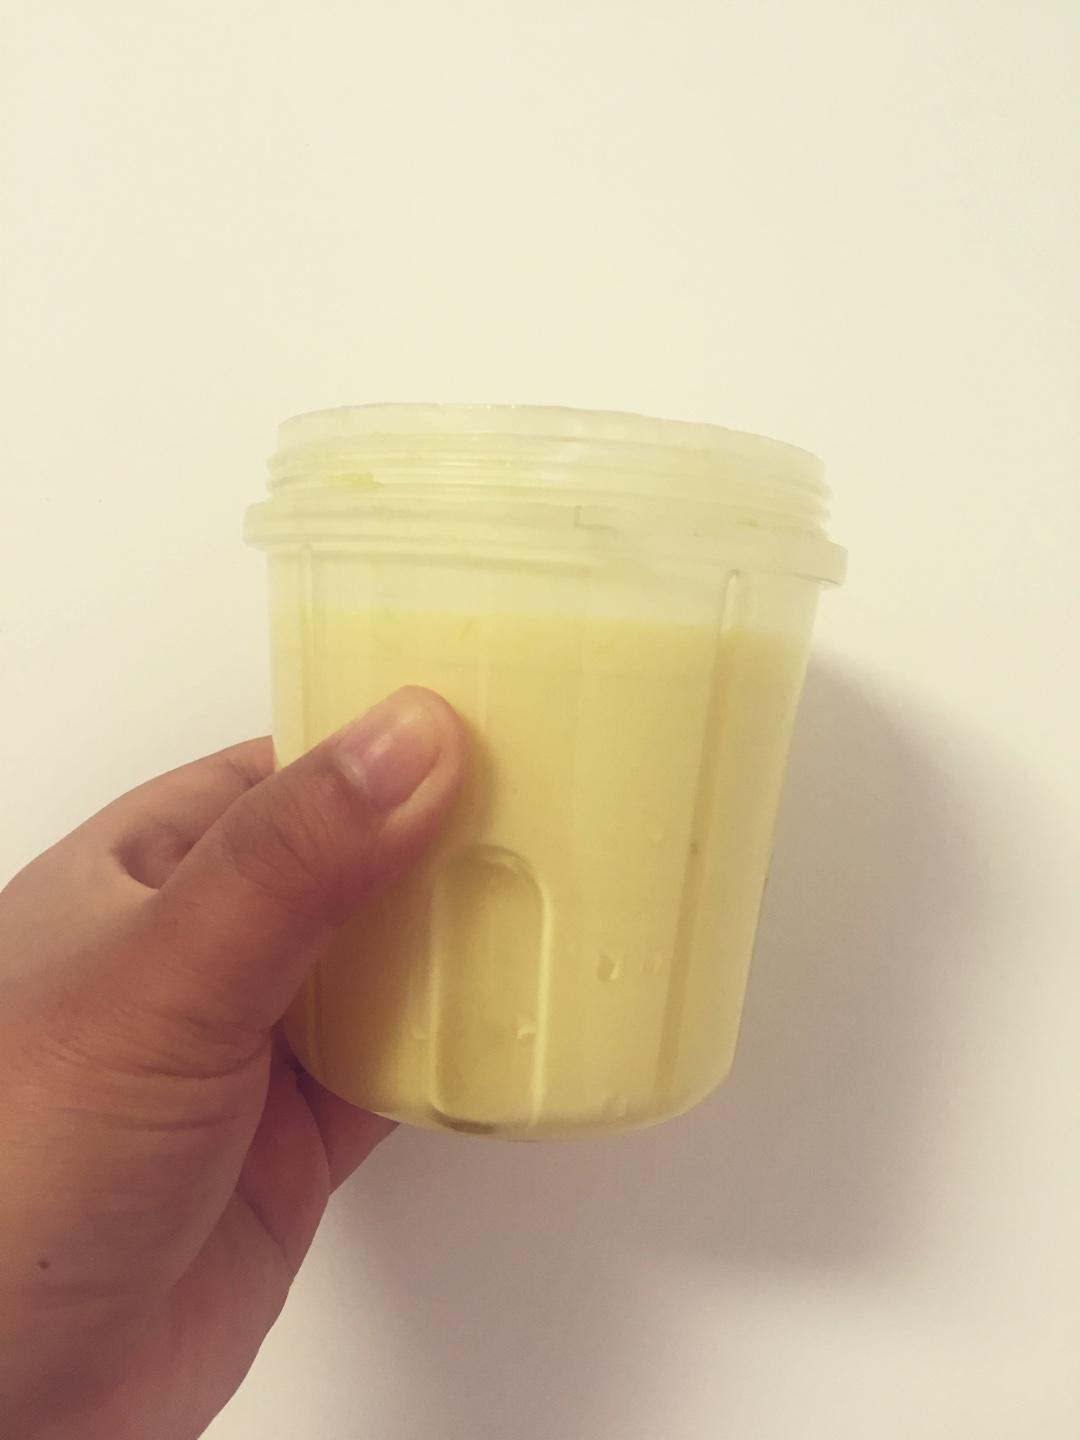 芒果酸奶